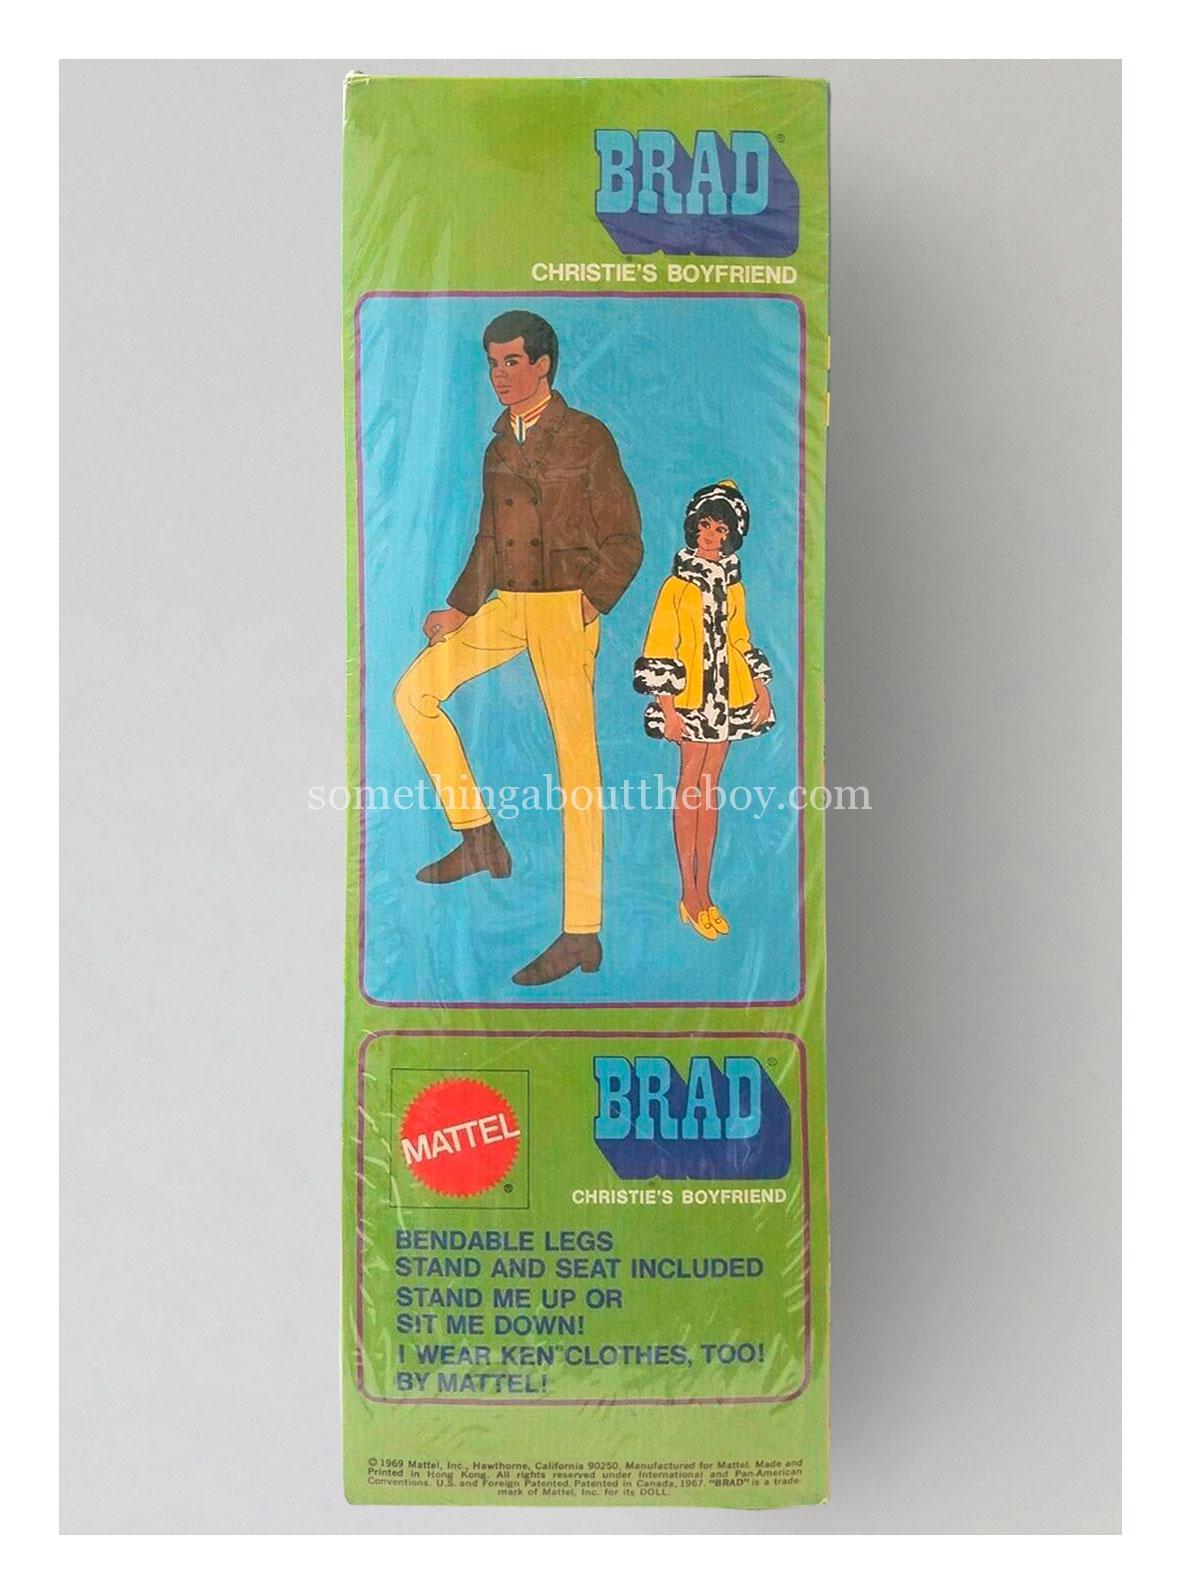 1970-71 #1142 Brad original packaging